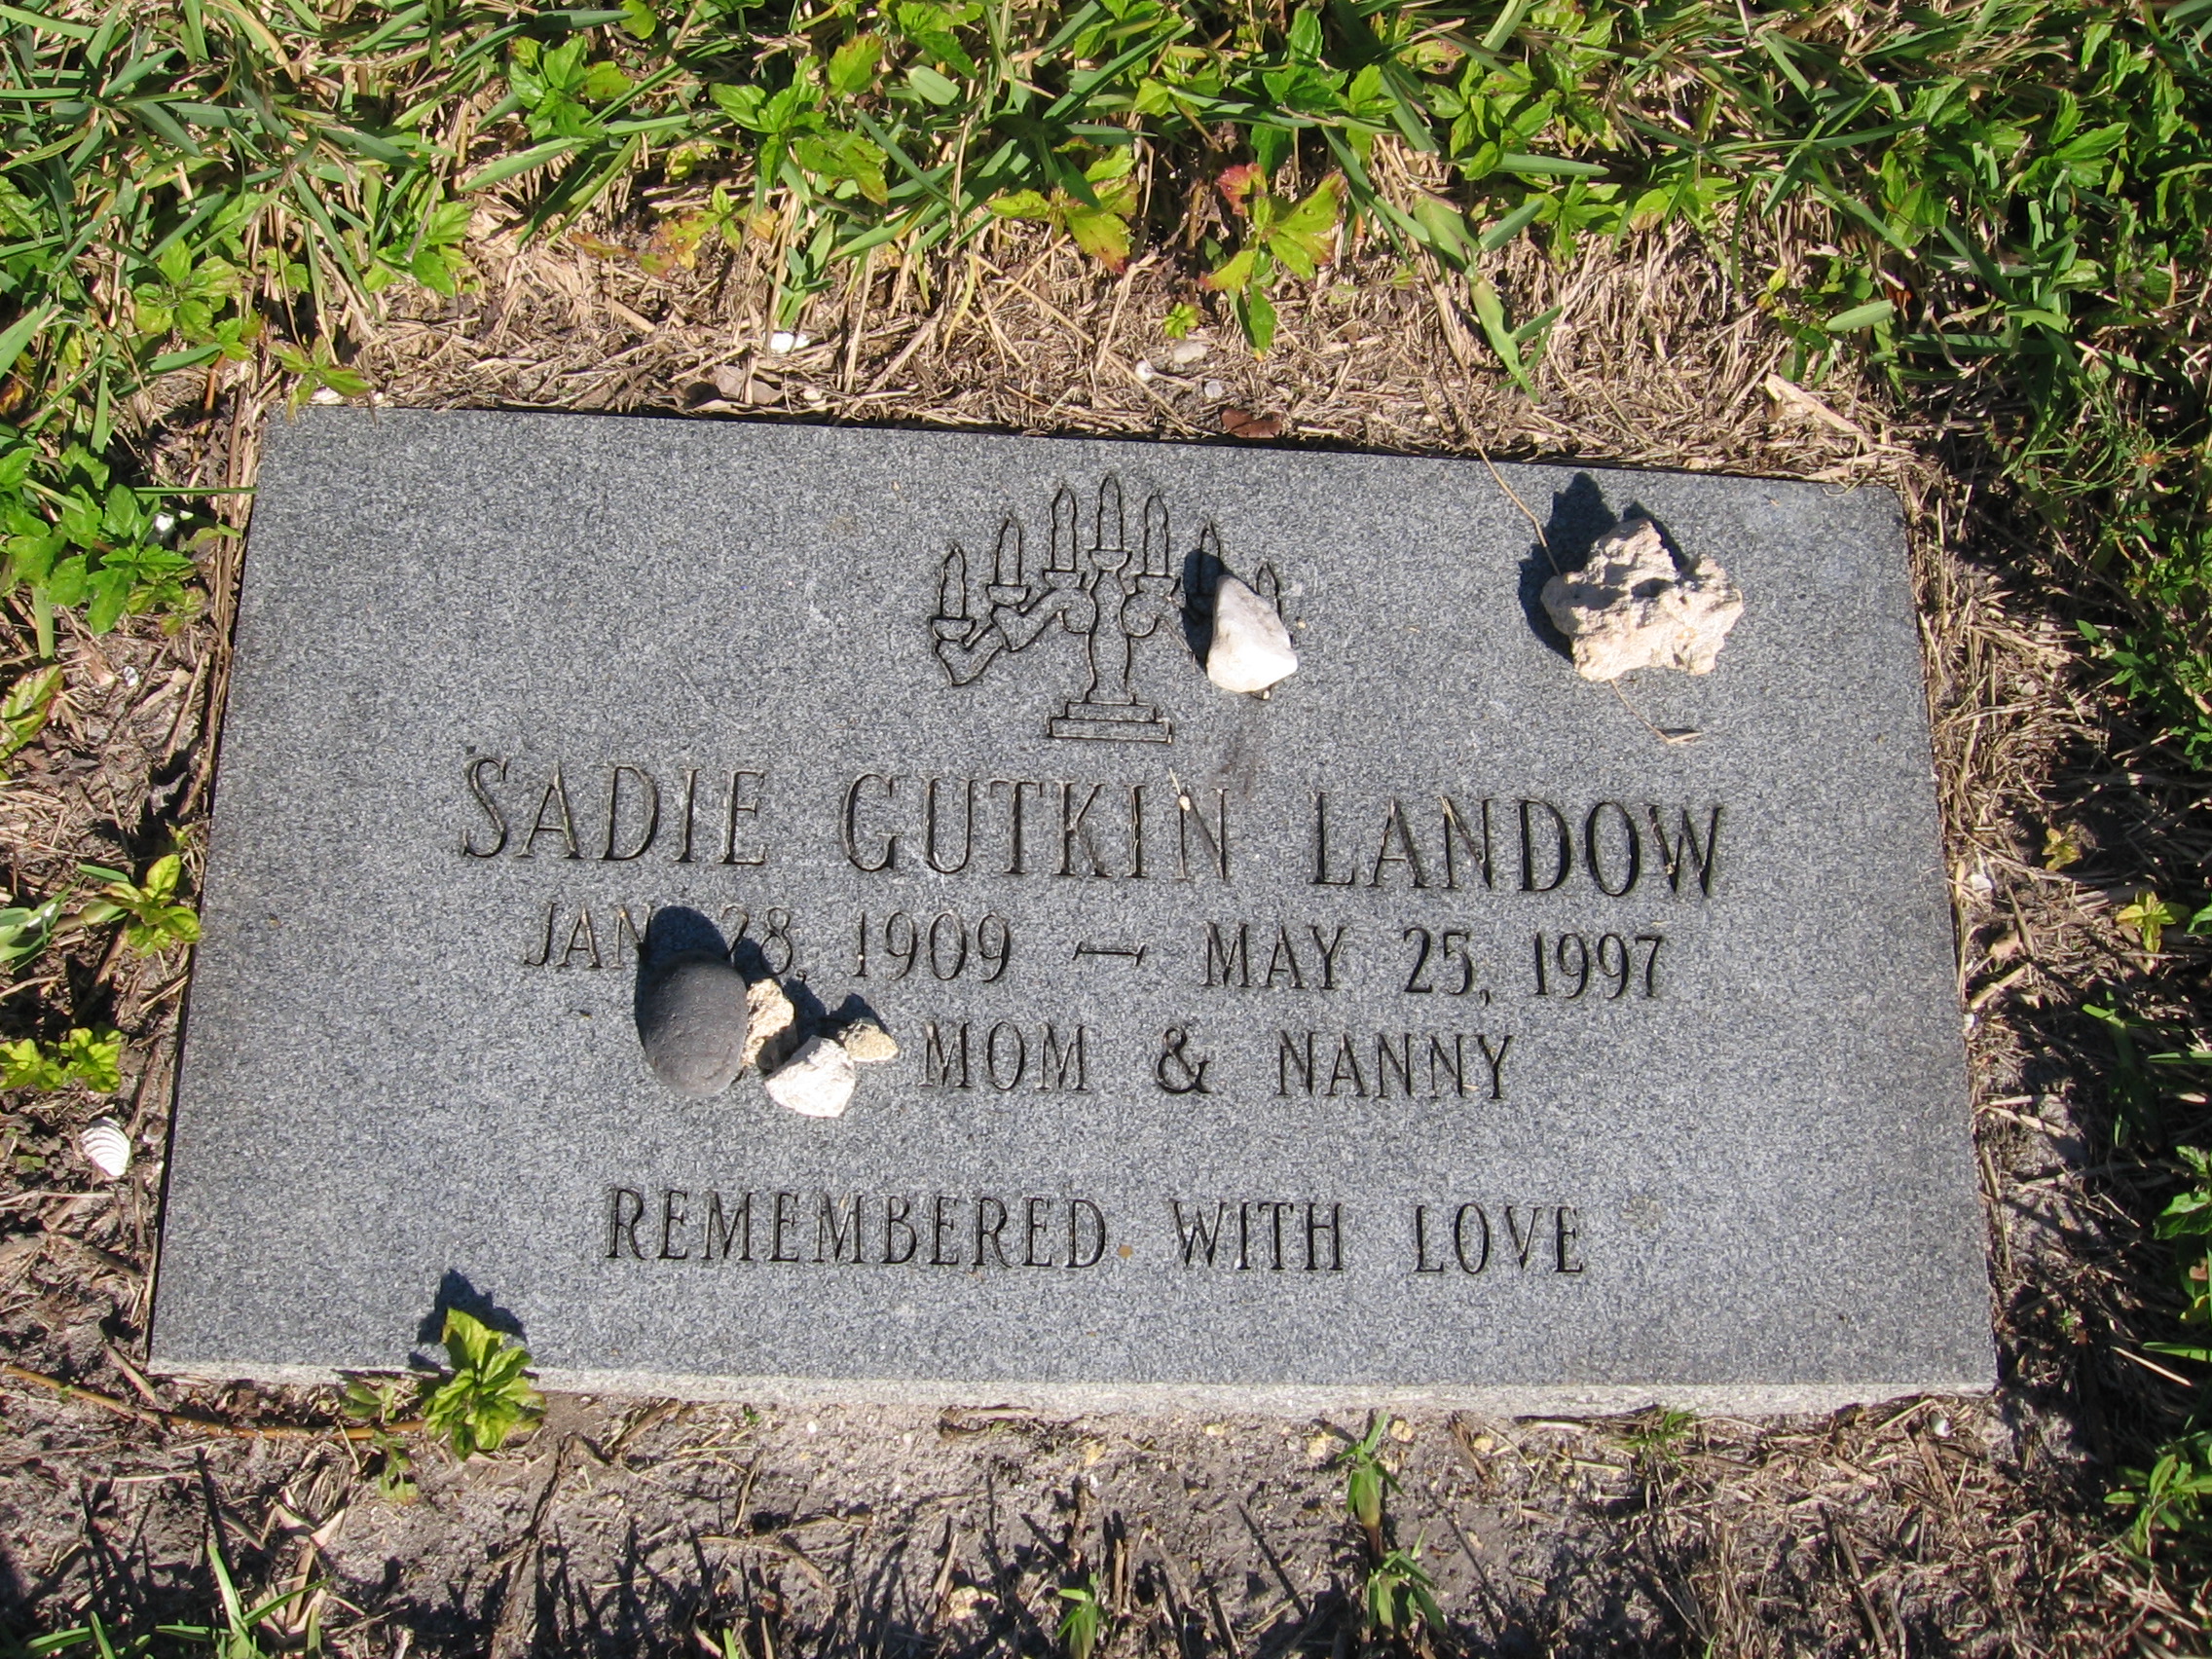 Sadie Gutkin Landow